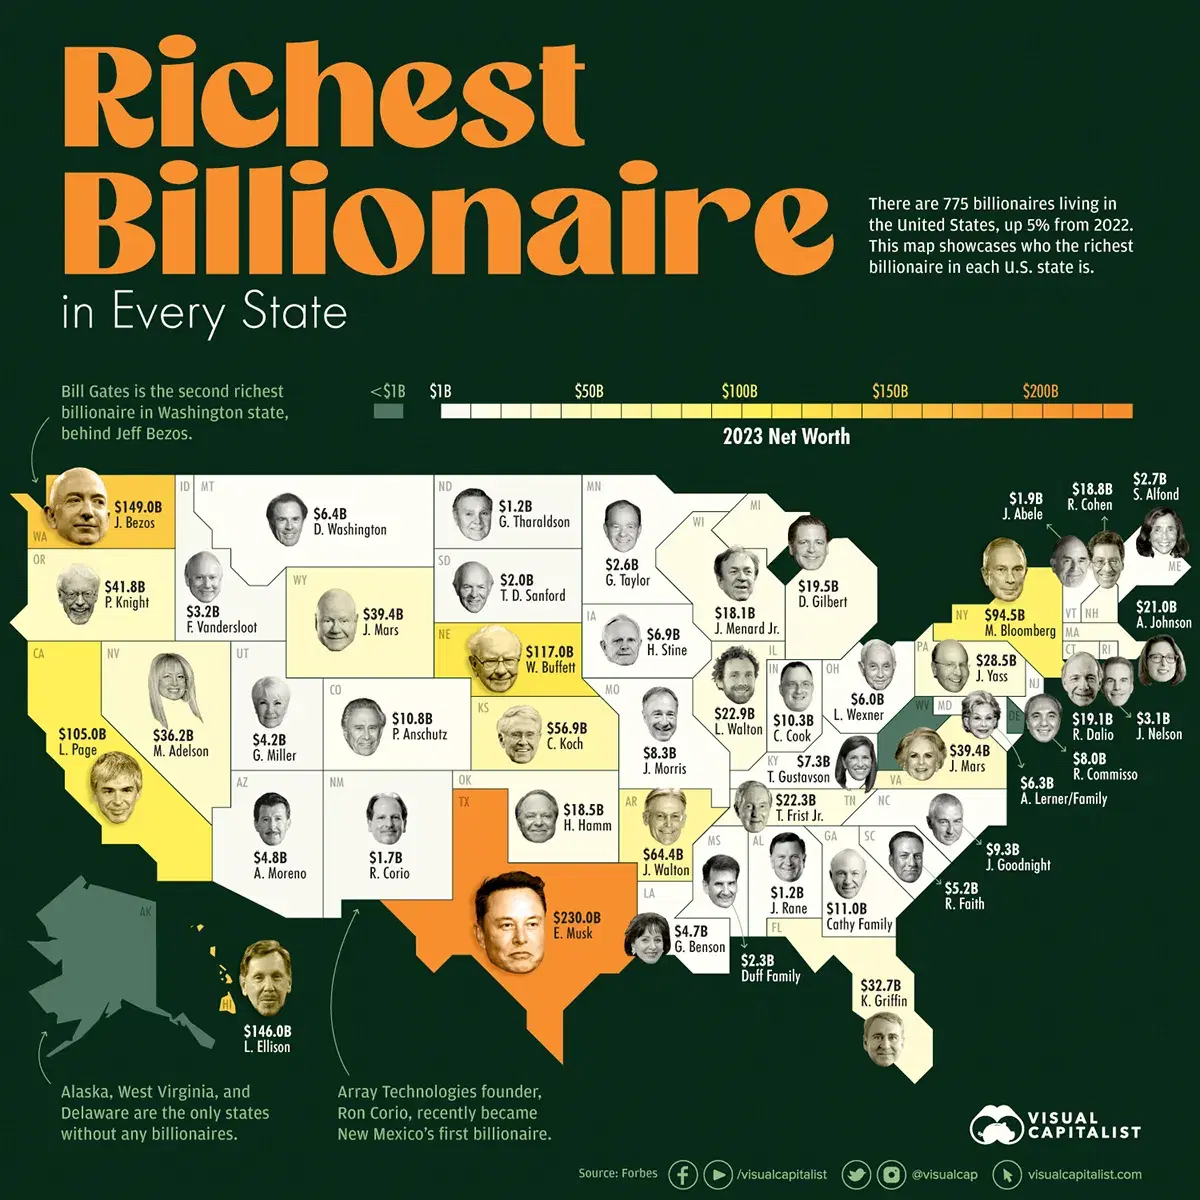 The Richest Billionaires in U.S. States